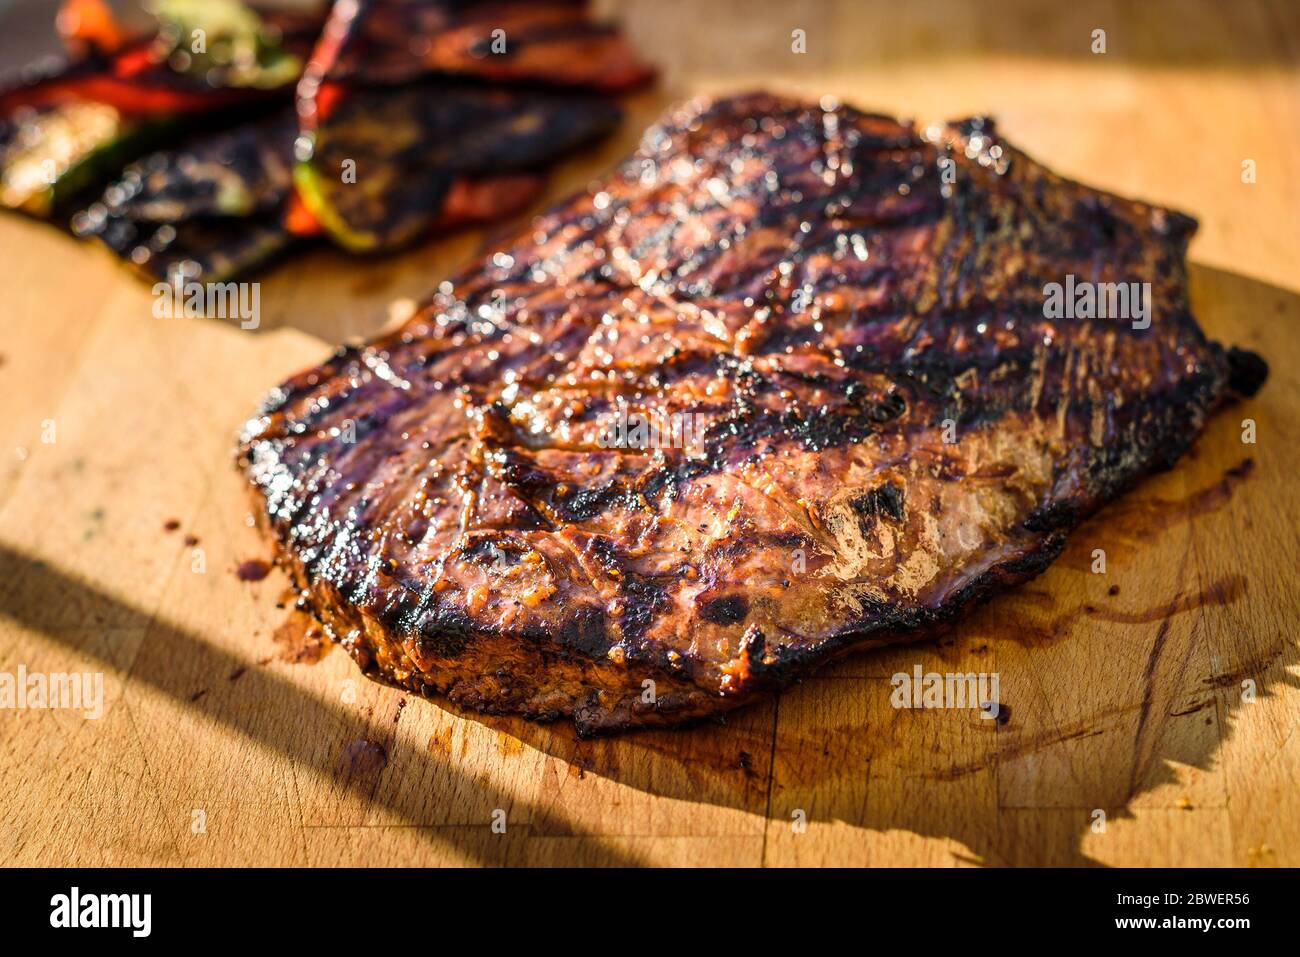 Saftig gegrillte marinierte Angus Beef Flank Steak auf Holzbrett. Fertige saftige medium Fleisch ruht, bevor es geschnitten ist und in Scheiben geschnitten. Stockfoto